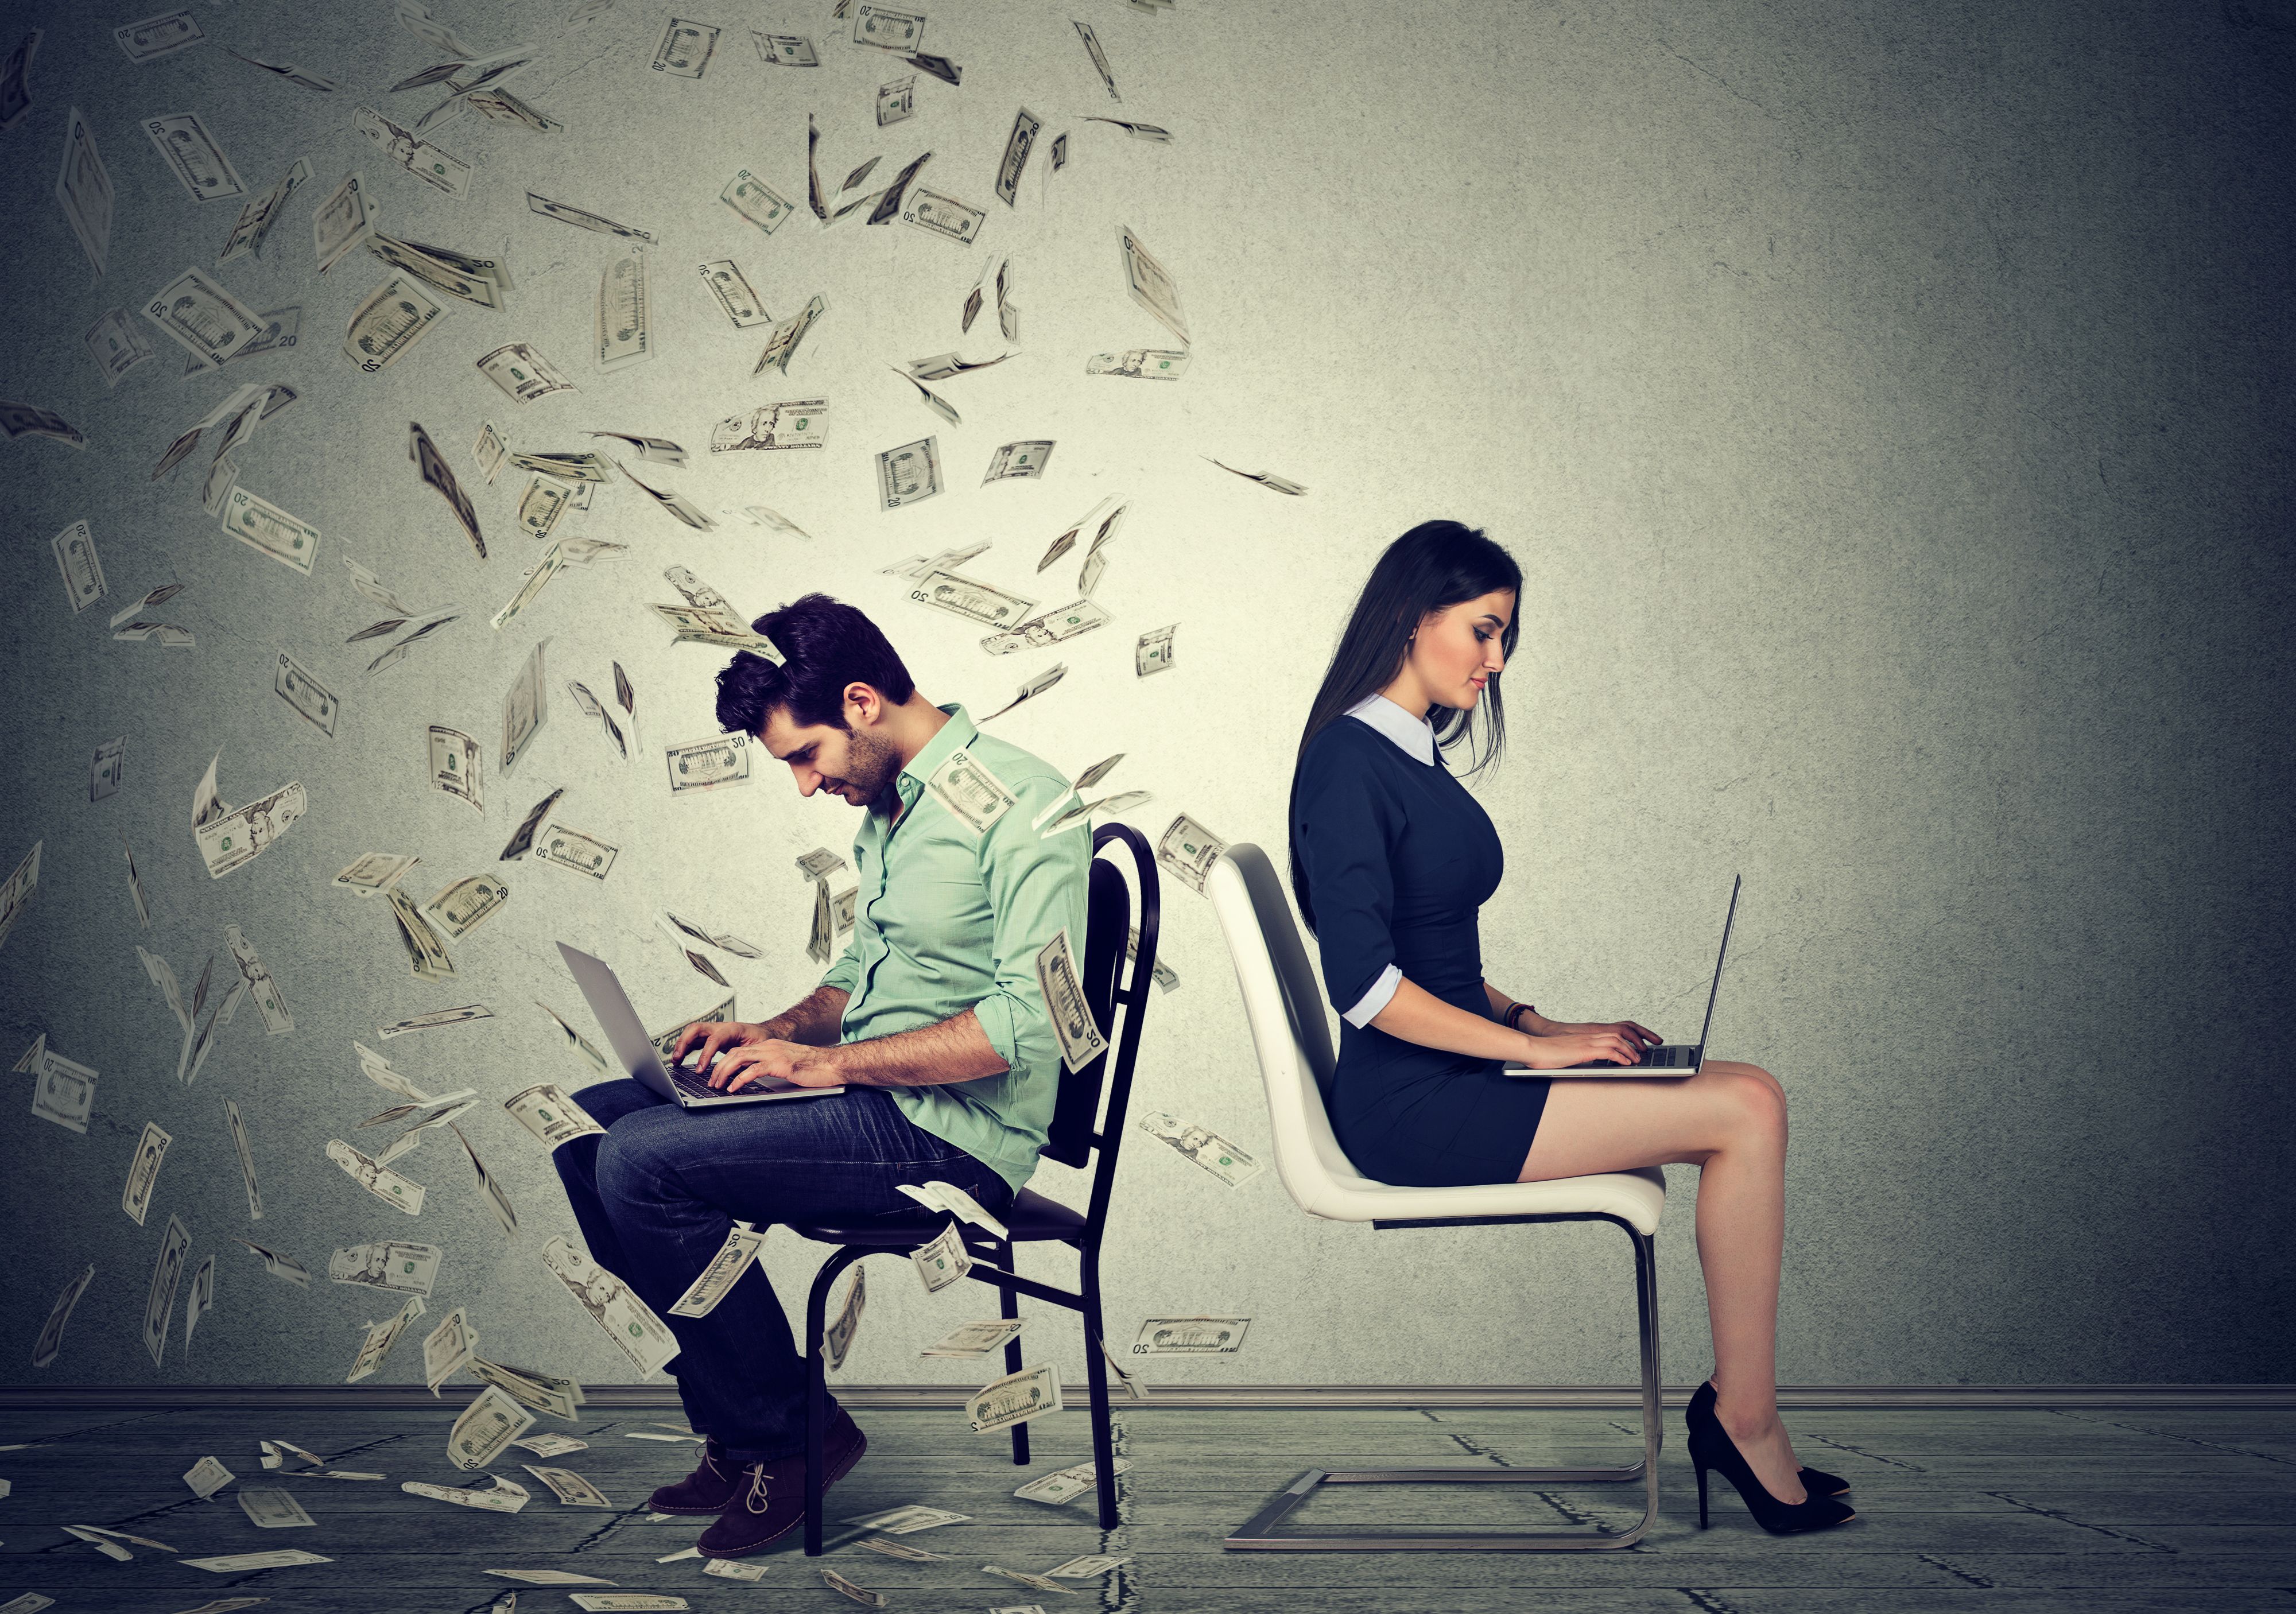  69 proc. pracodawców planuje pozostawić pensje pracowników na dotychczasowym poziomie. (Fot. Shutterstock)